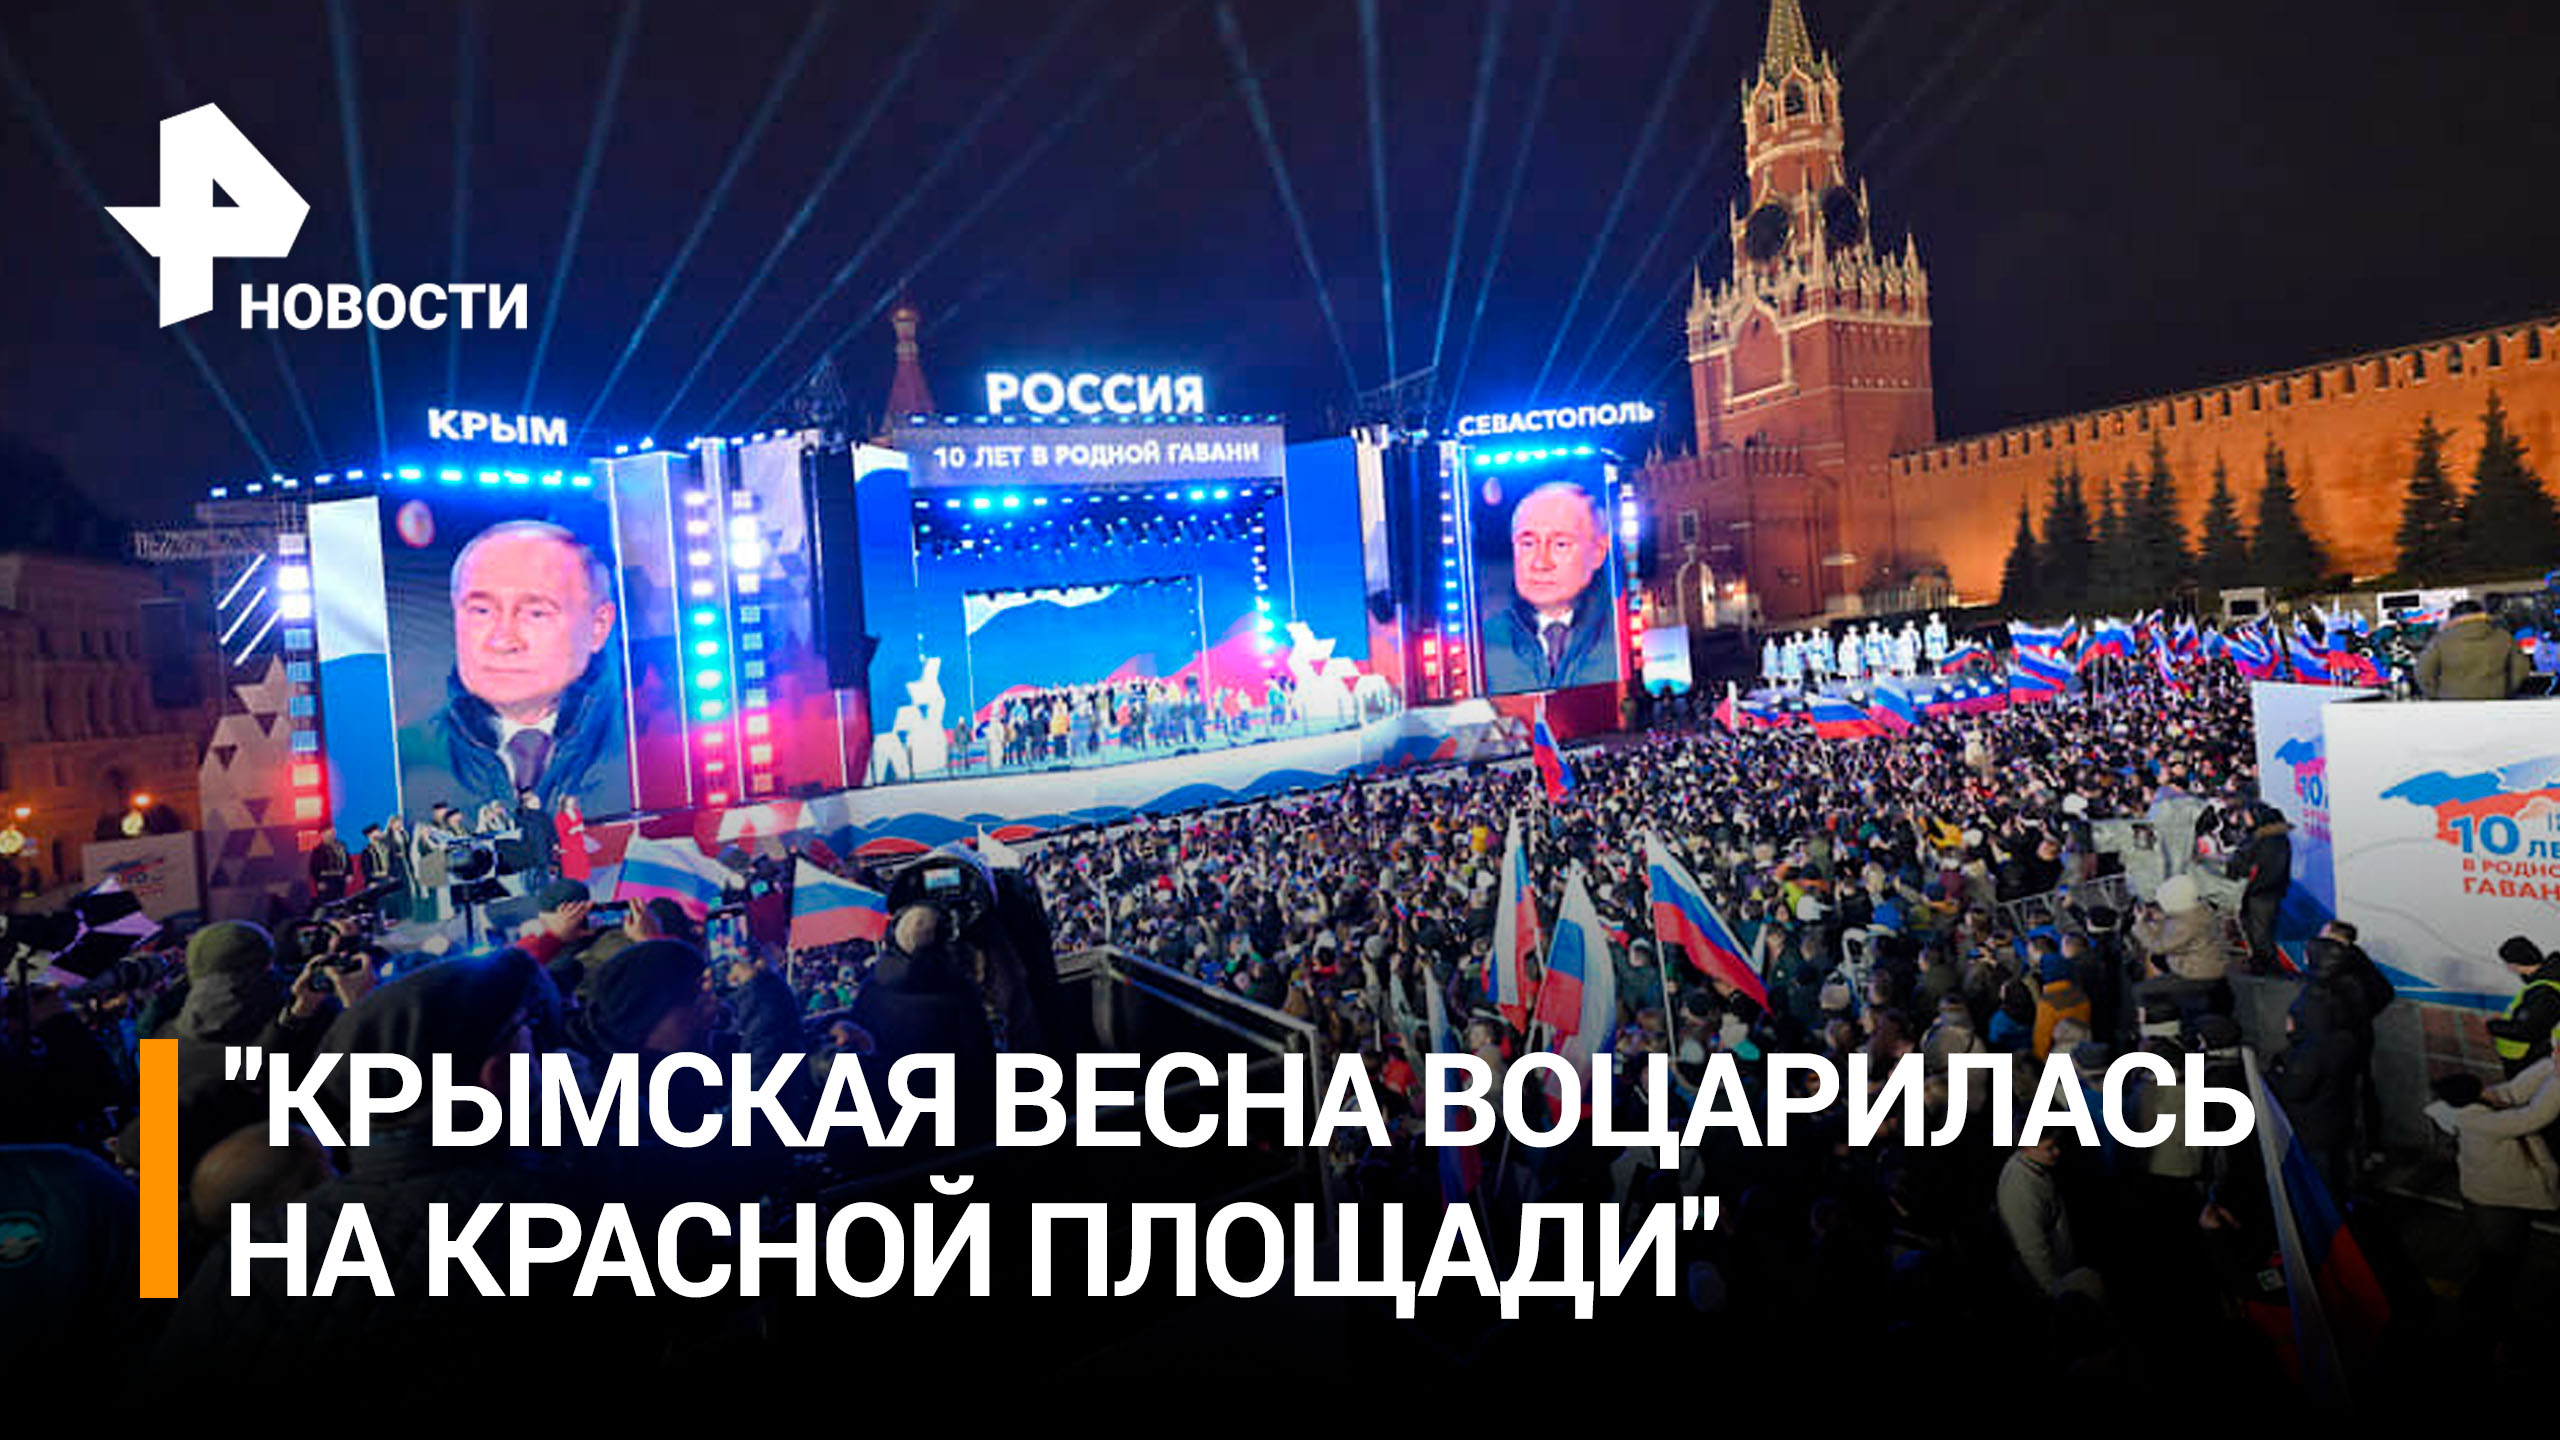 Как прошел концерт, посвященный 10-летию воссоединения Крыма с Россией / РЕН Новости